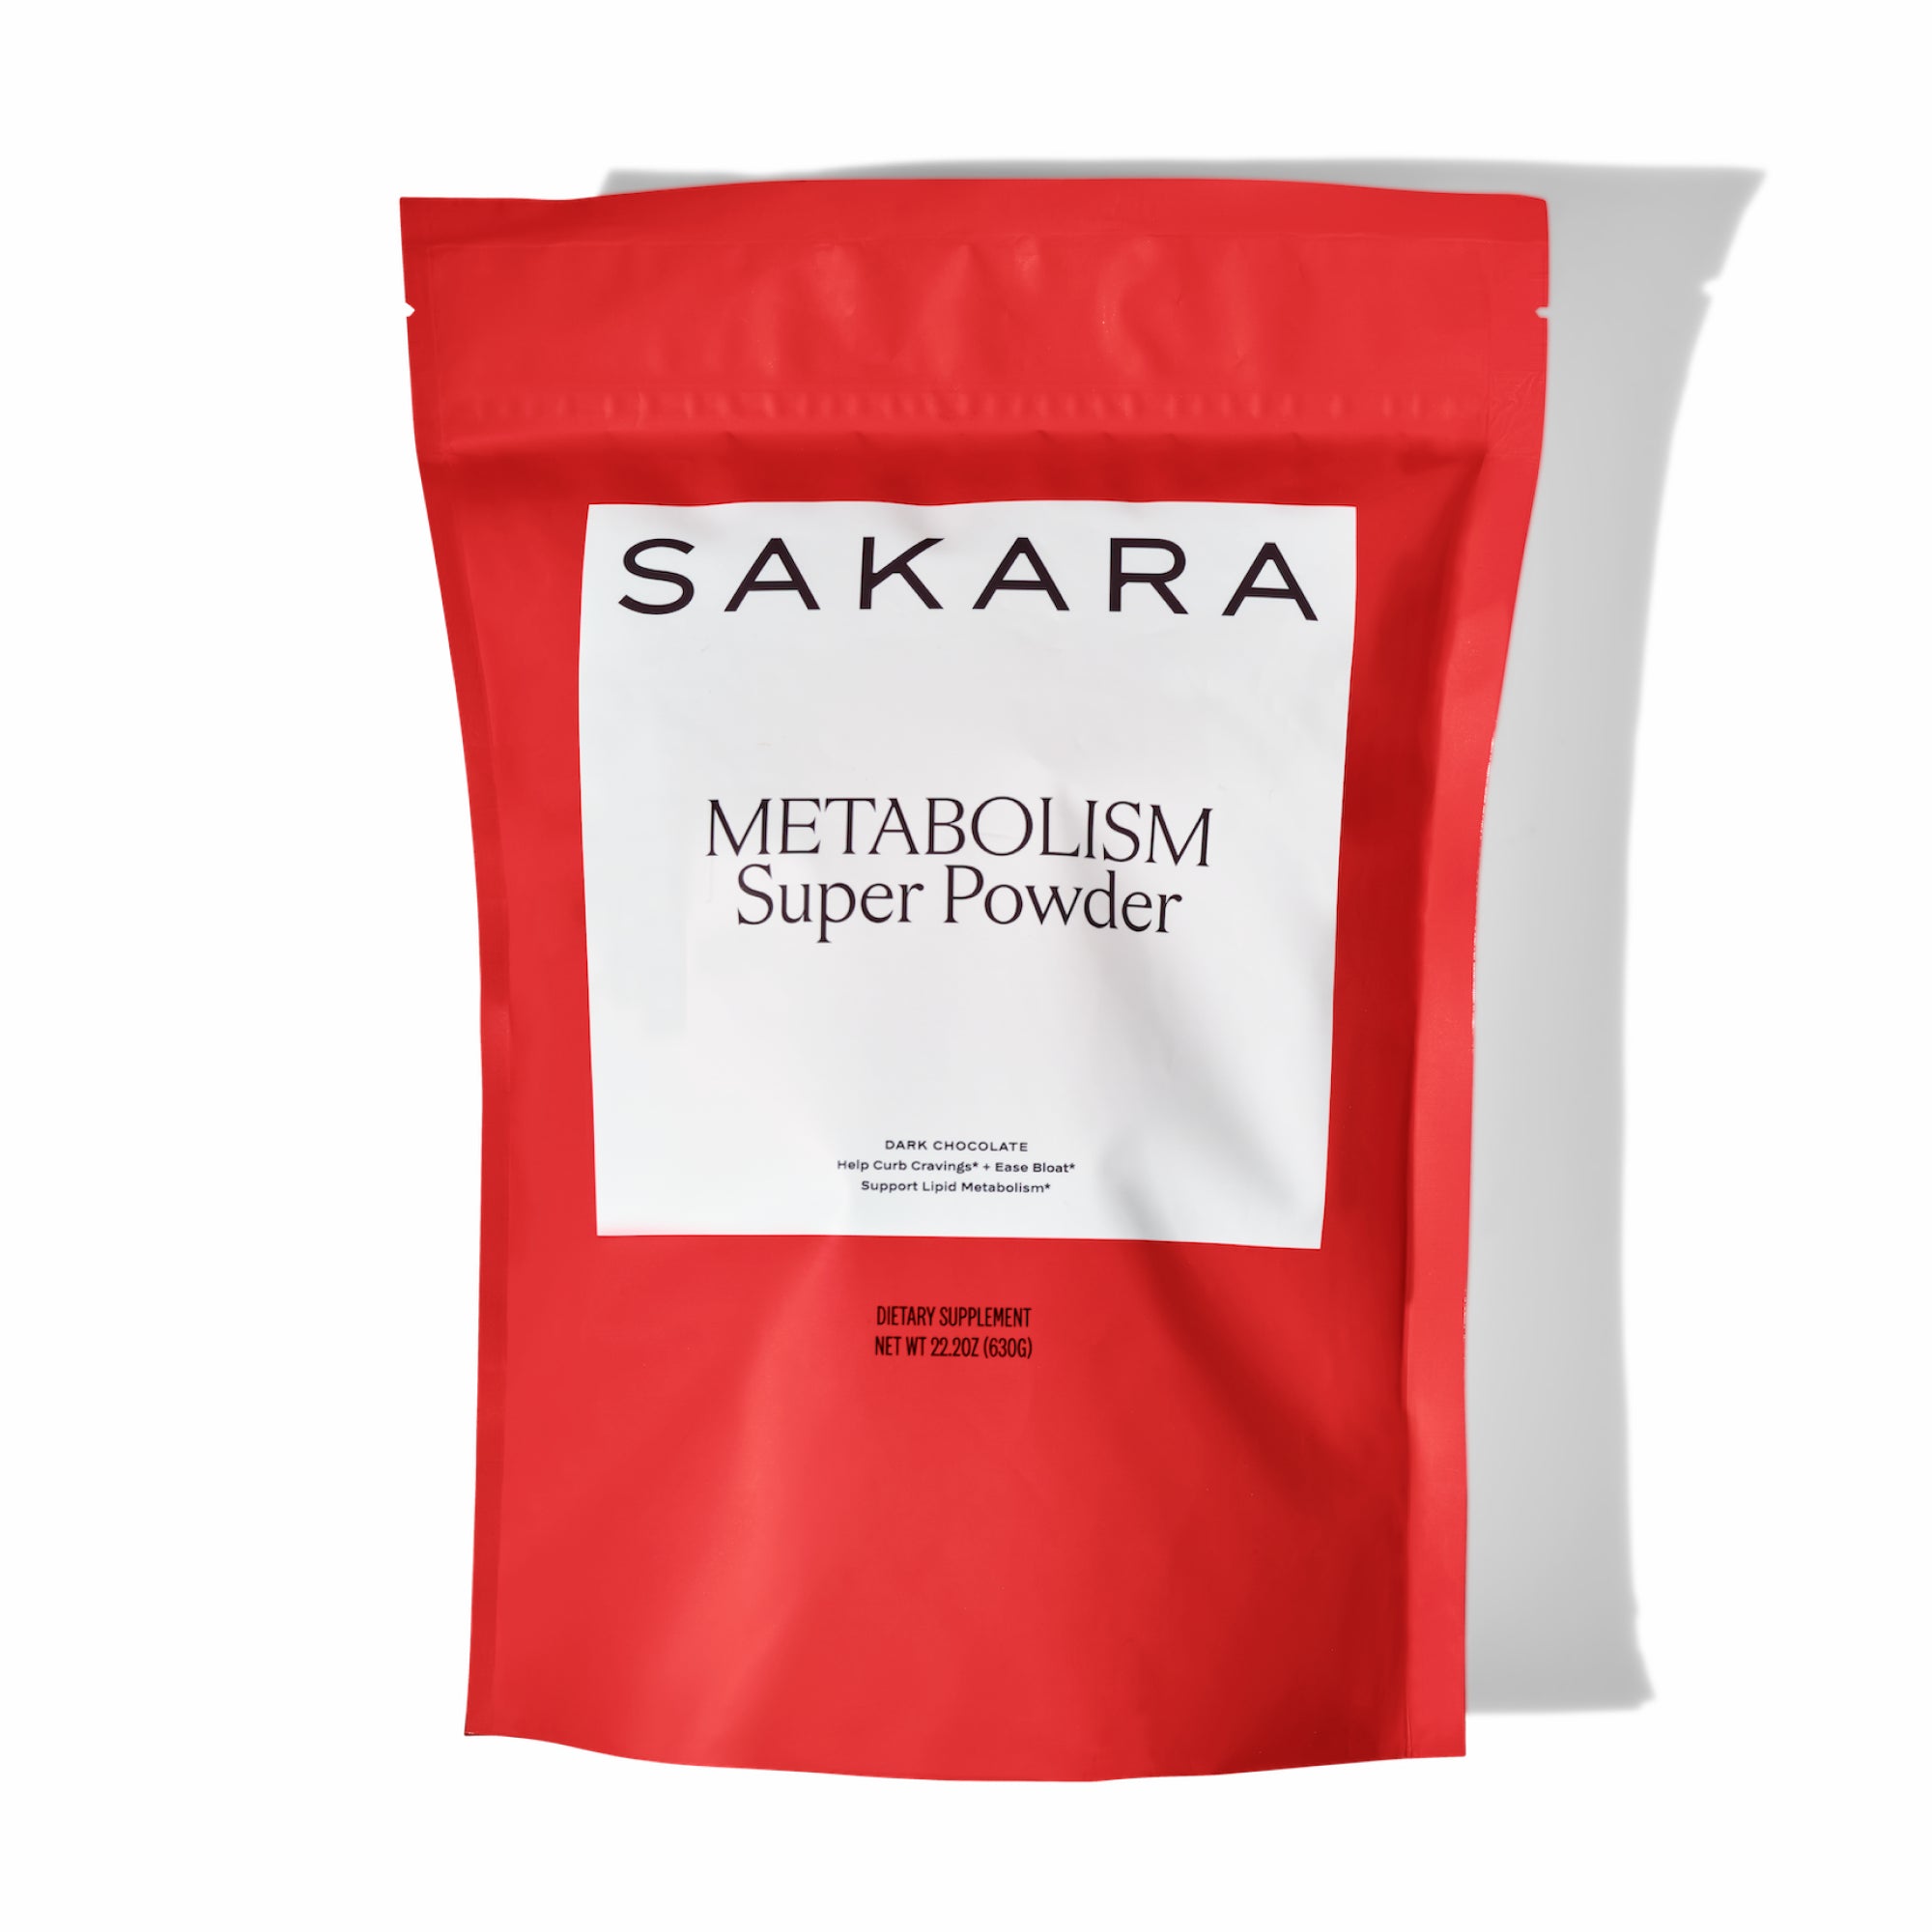 Metabolism Super Powder - Metabolism Super Powder